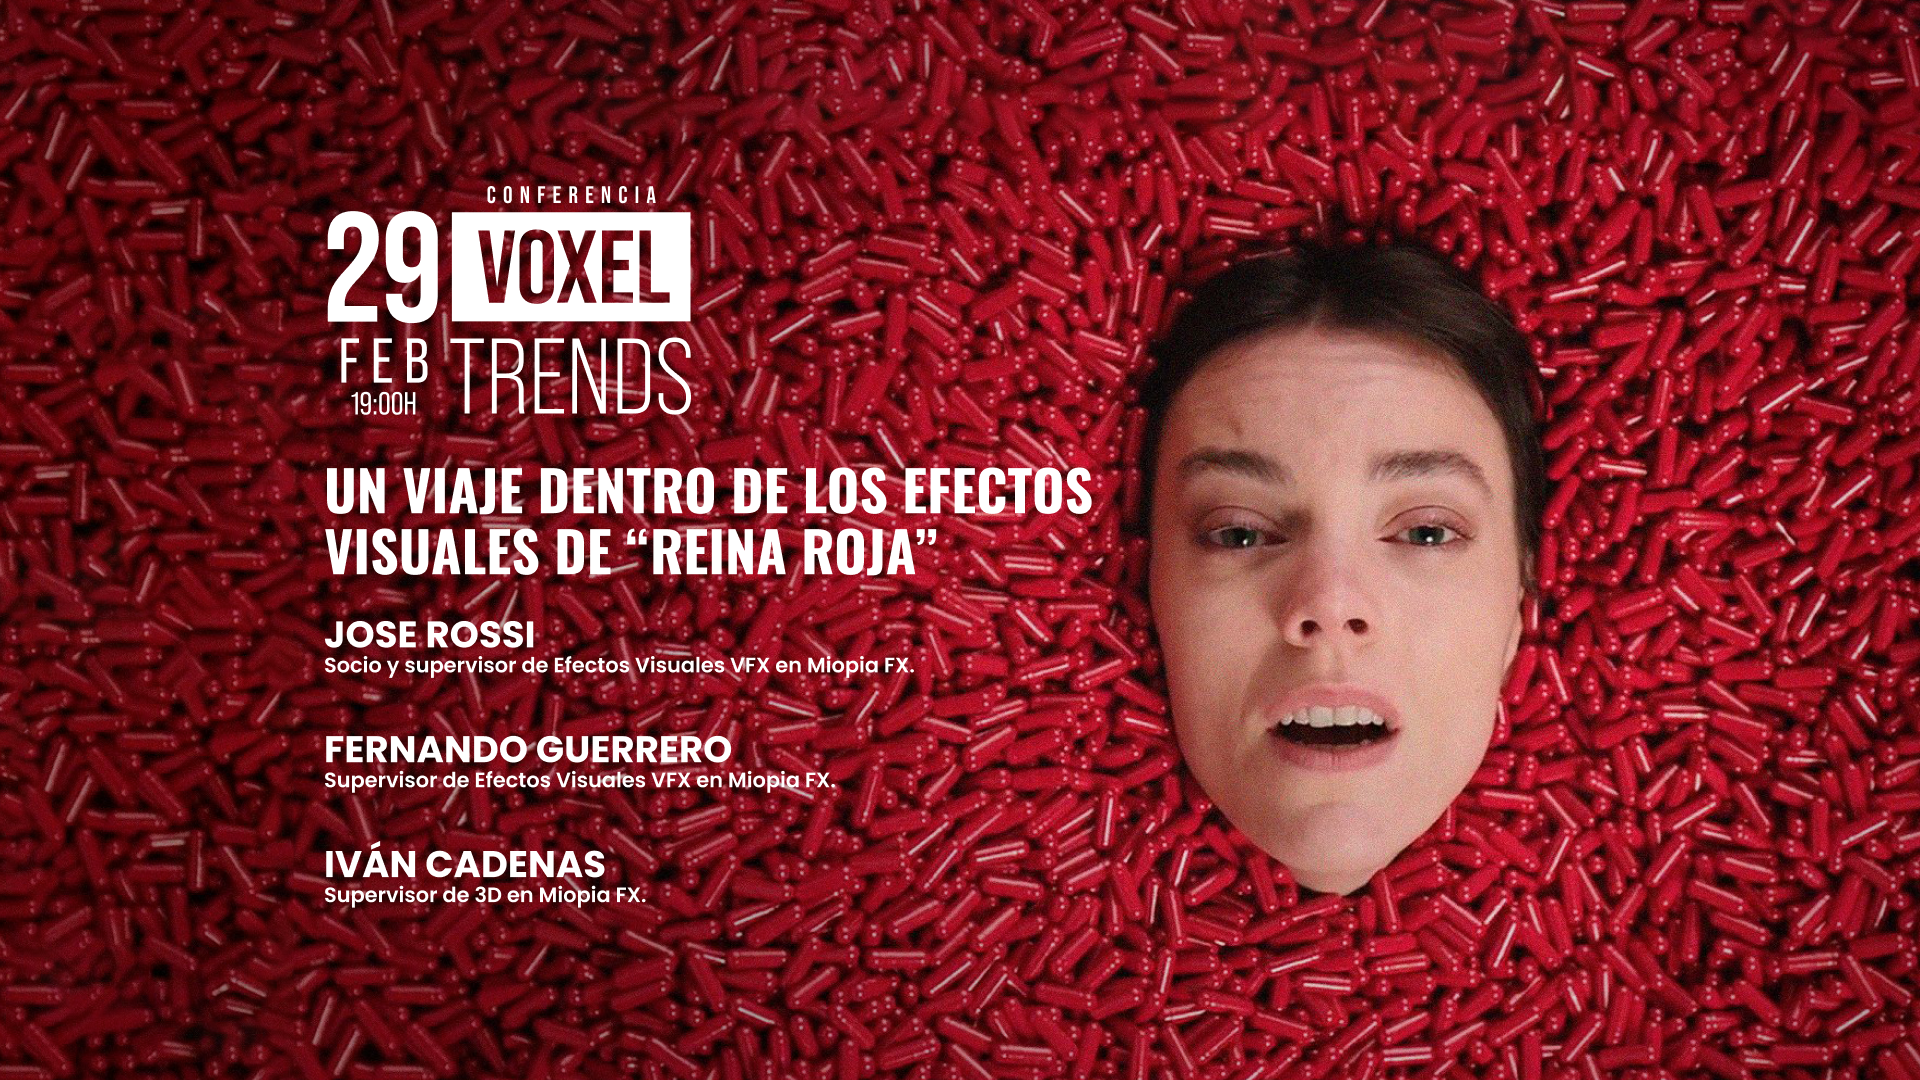 Voxel Trends 29 febrero VFX - Reina Roja